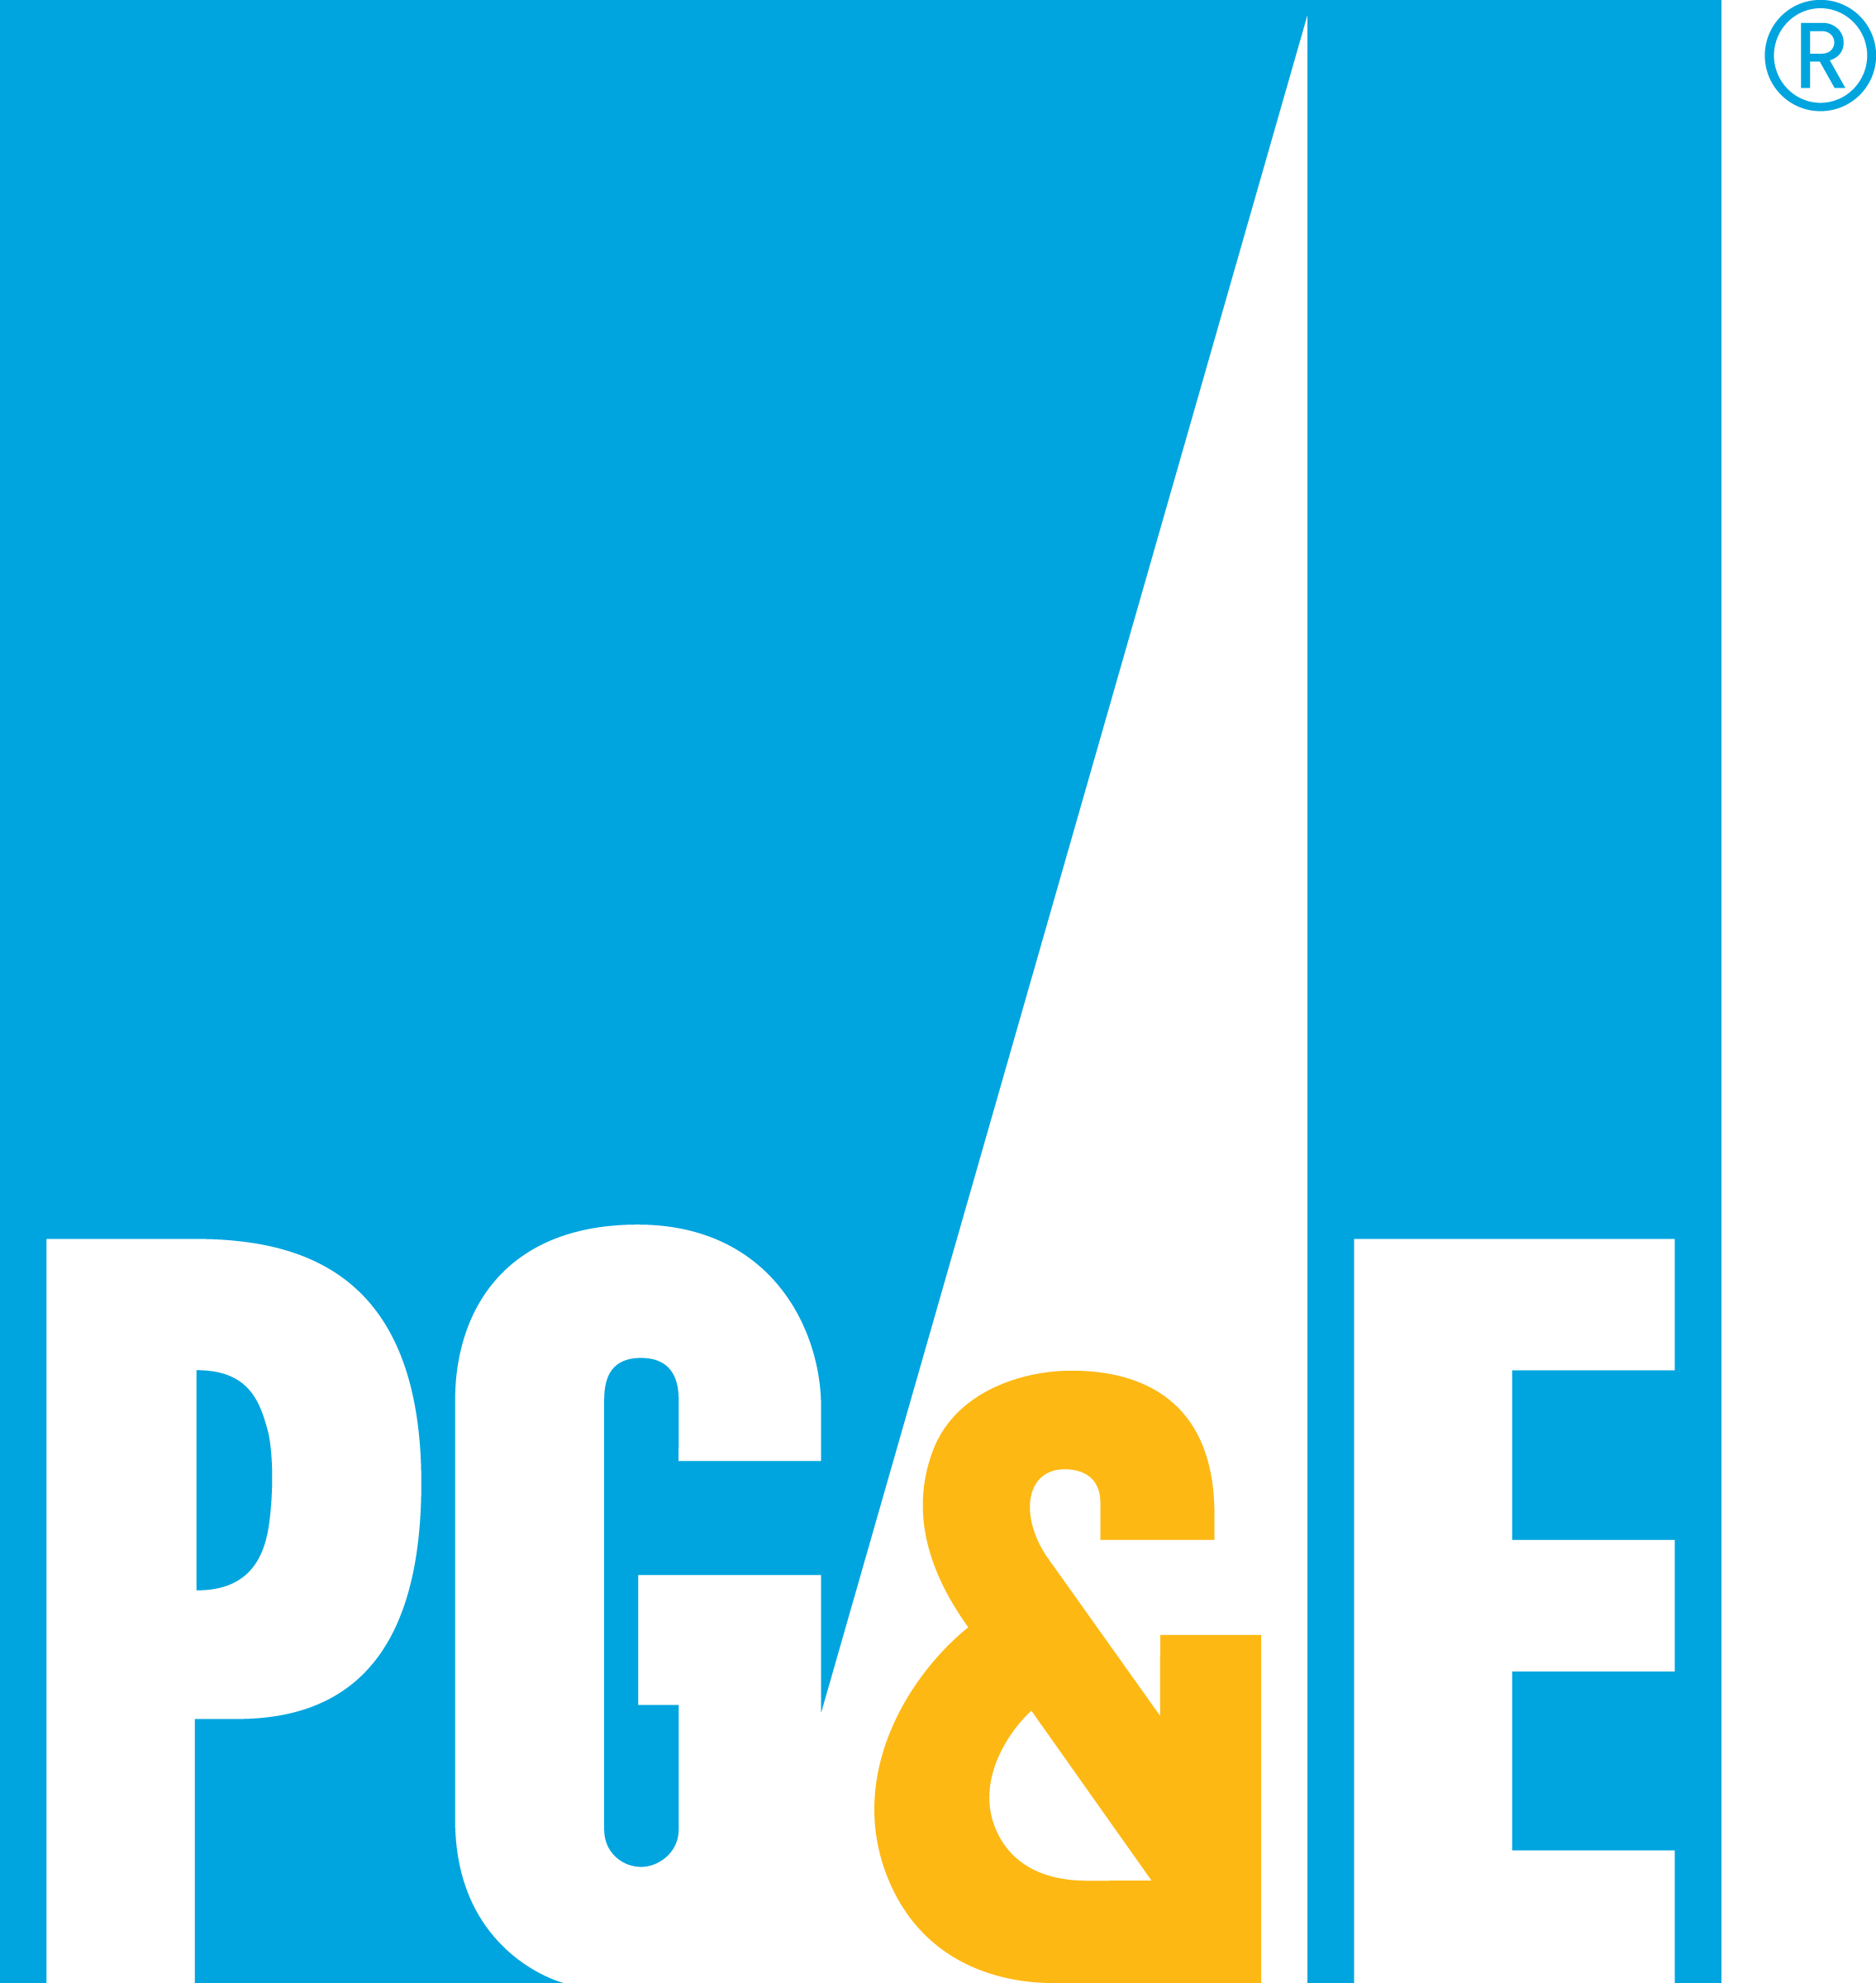 pge_reg_logo.png